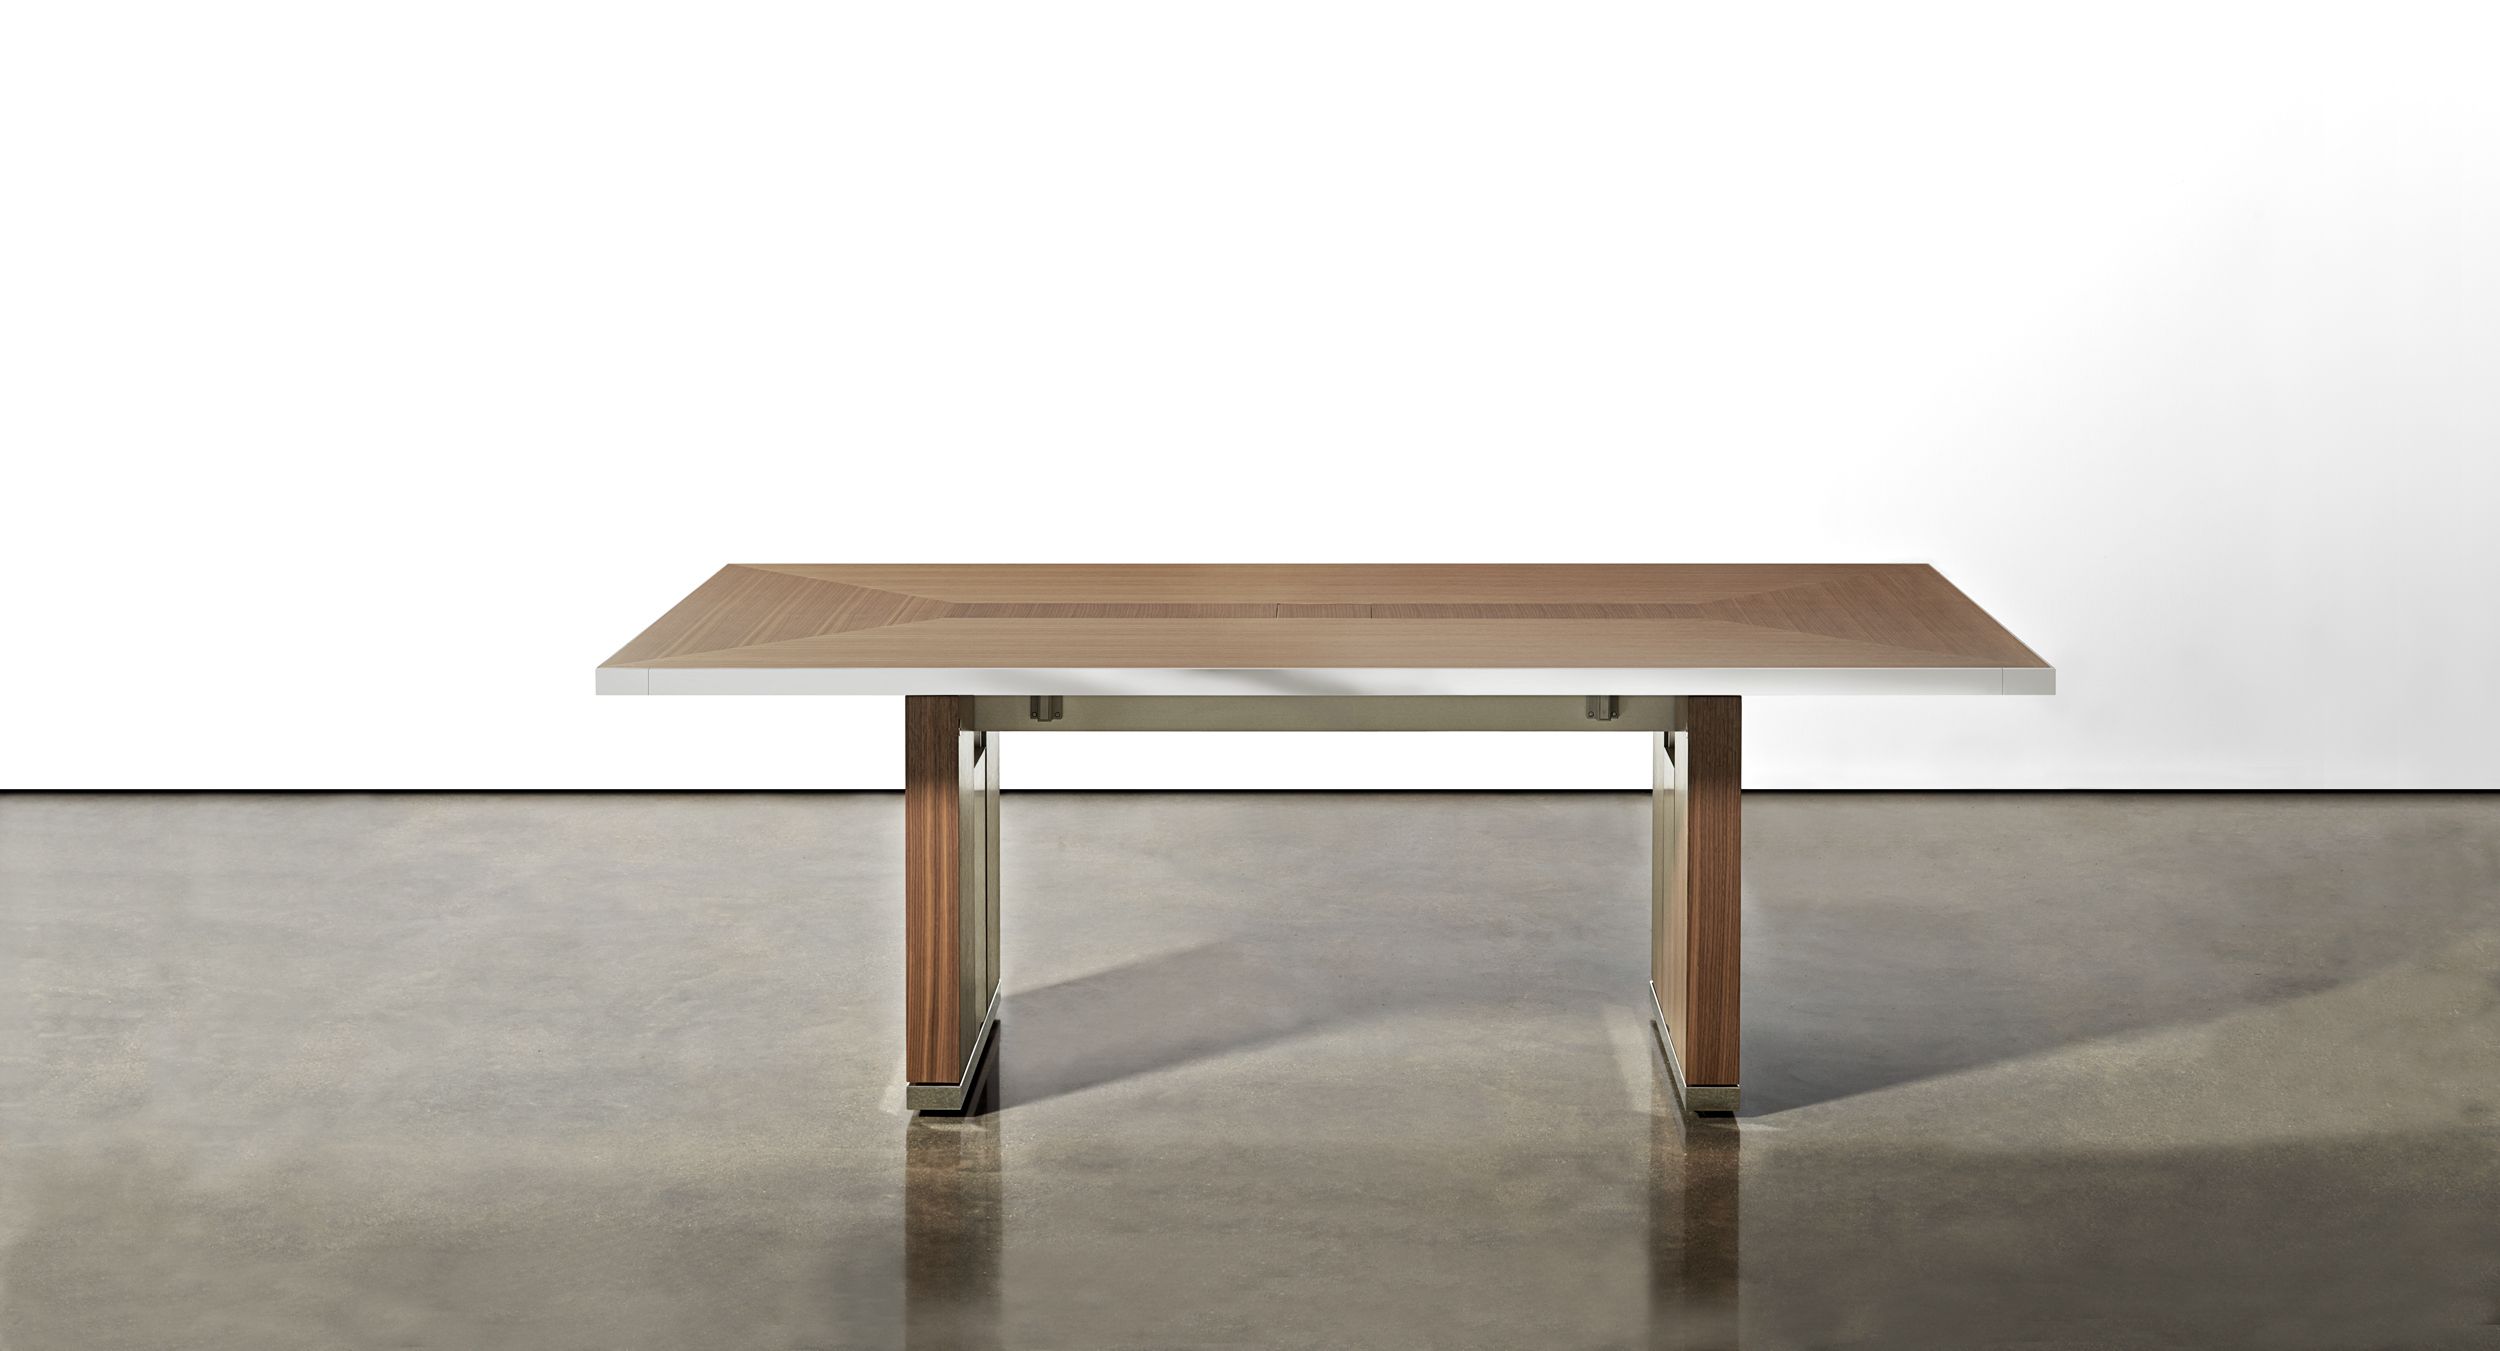 Motus mobile table with veneer pattern surface